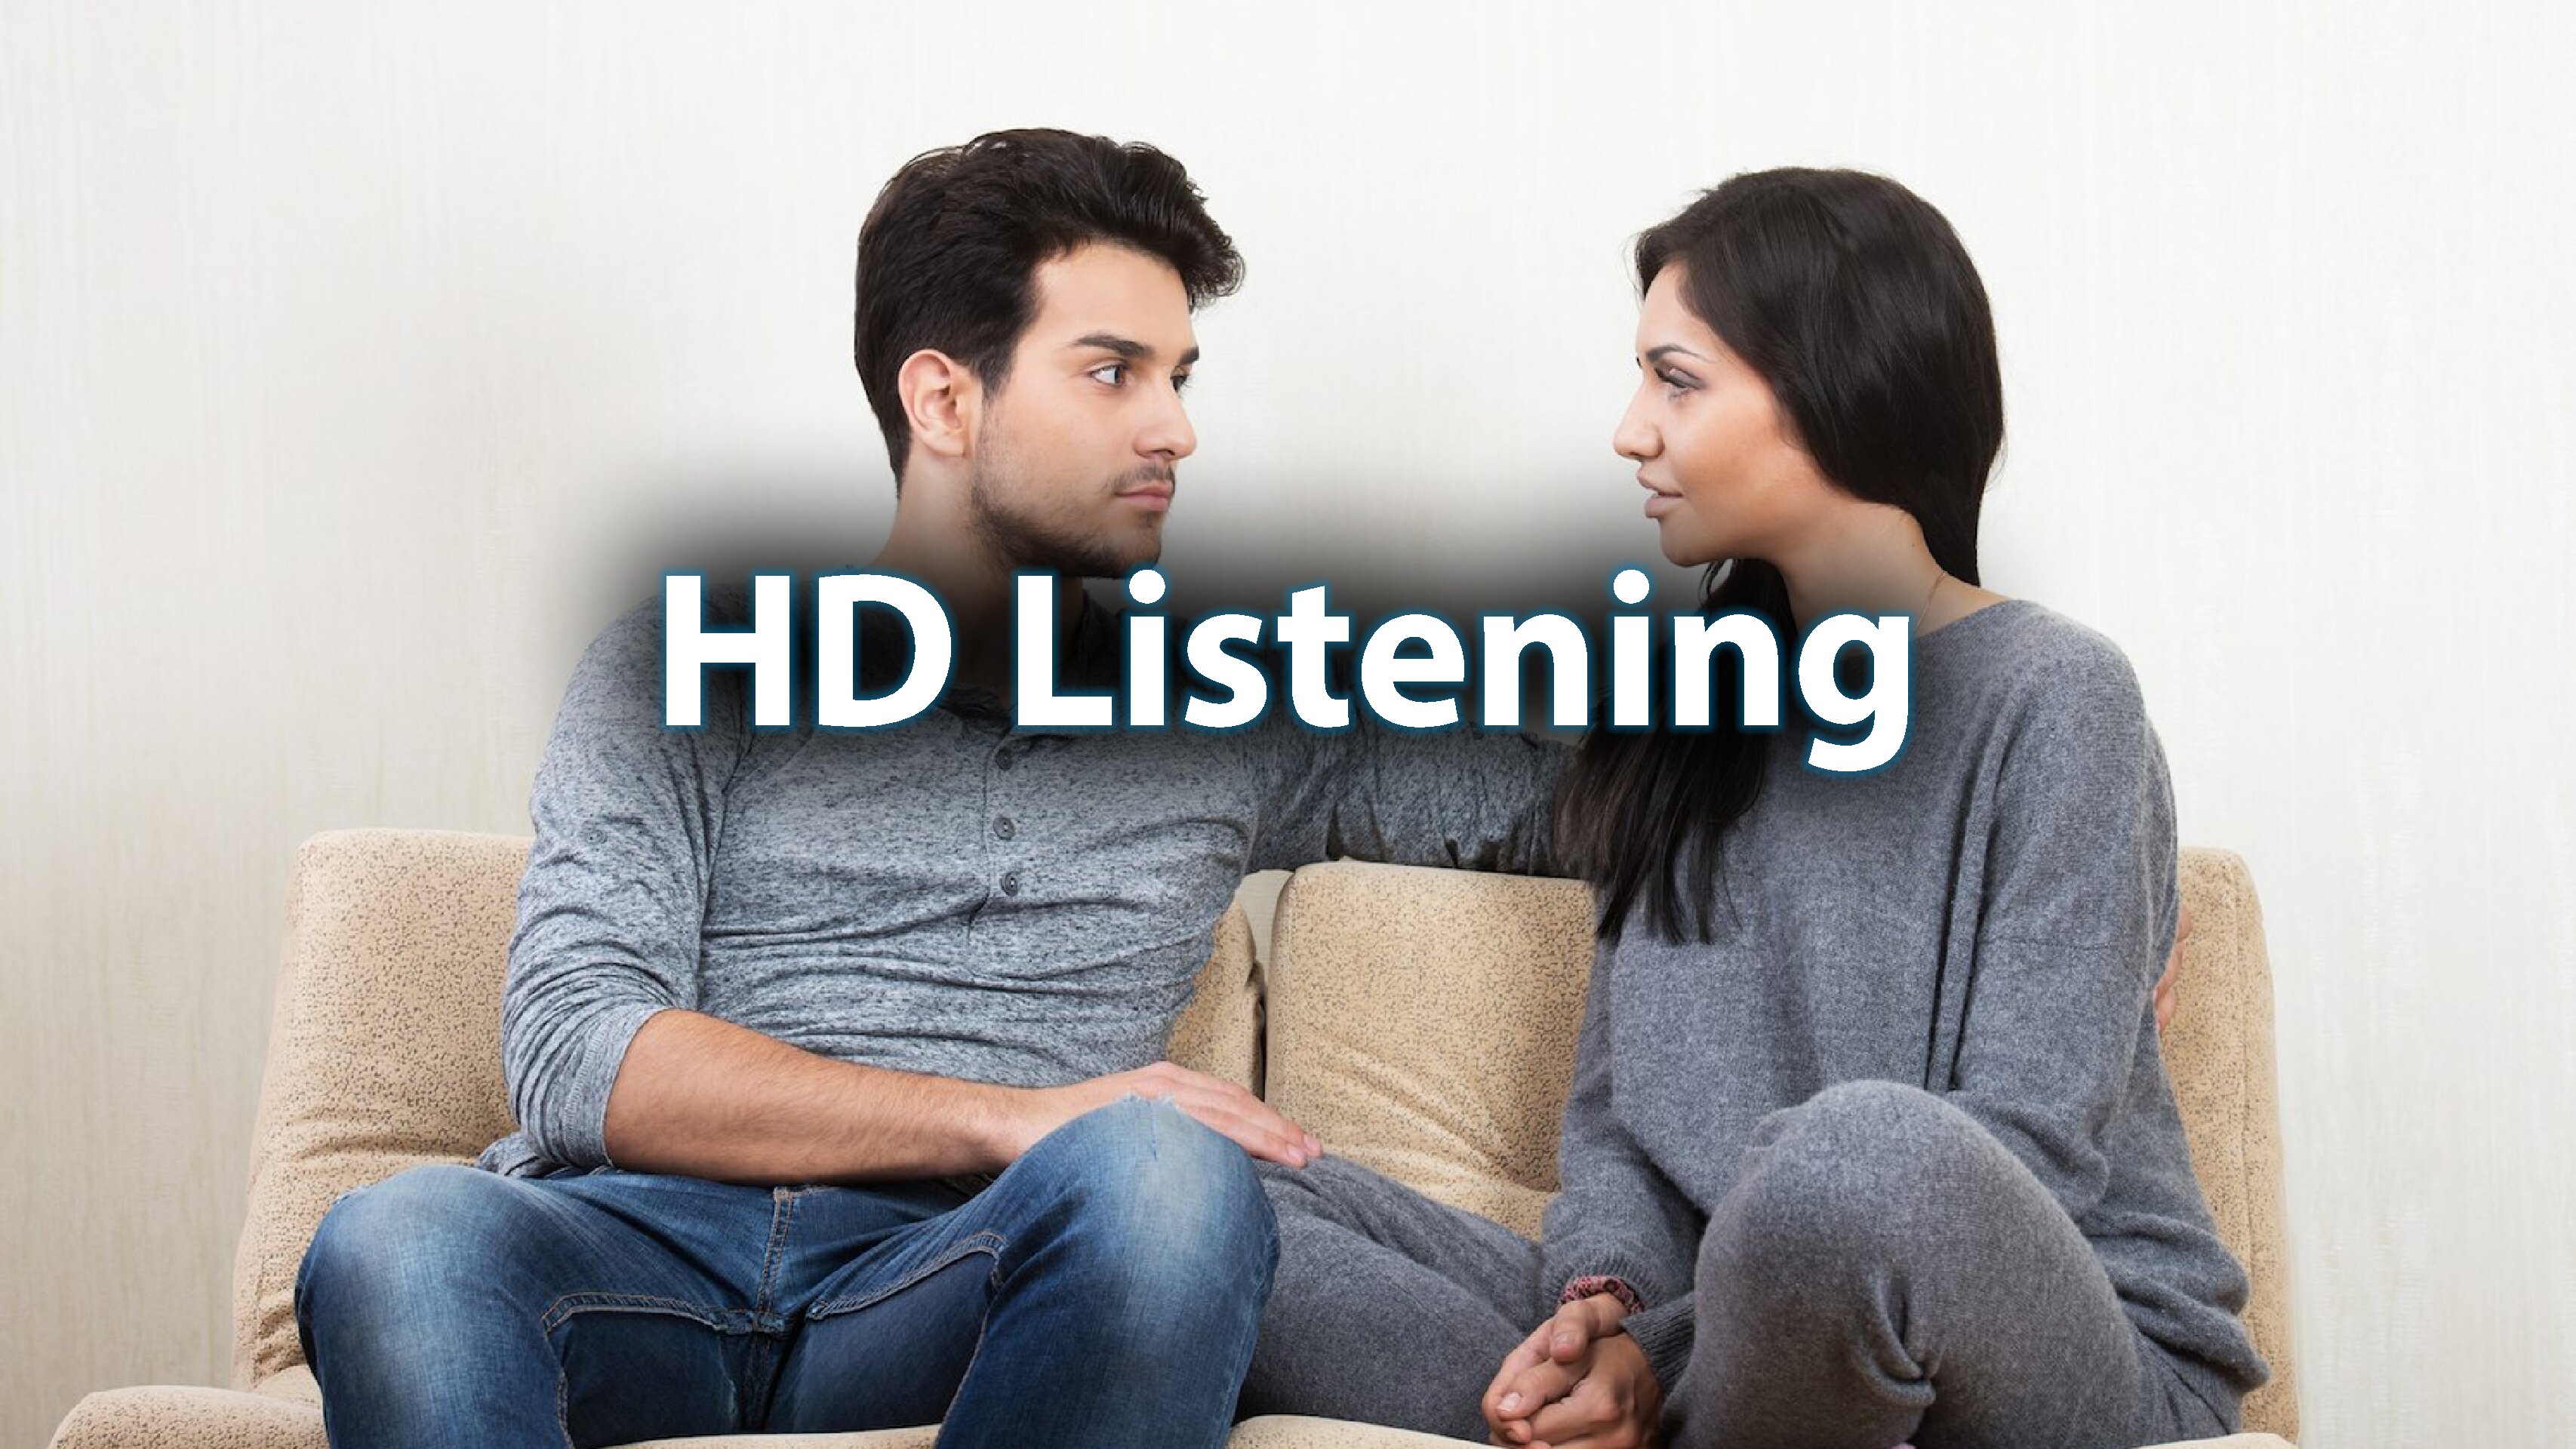 Day 12: HD Listening